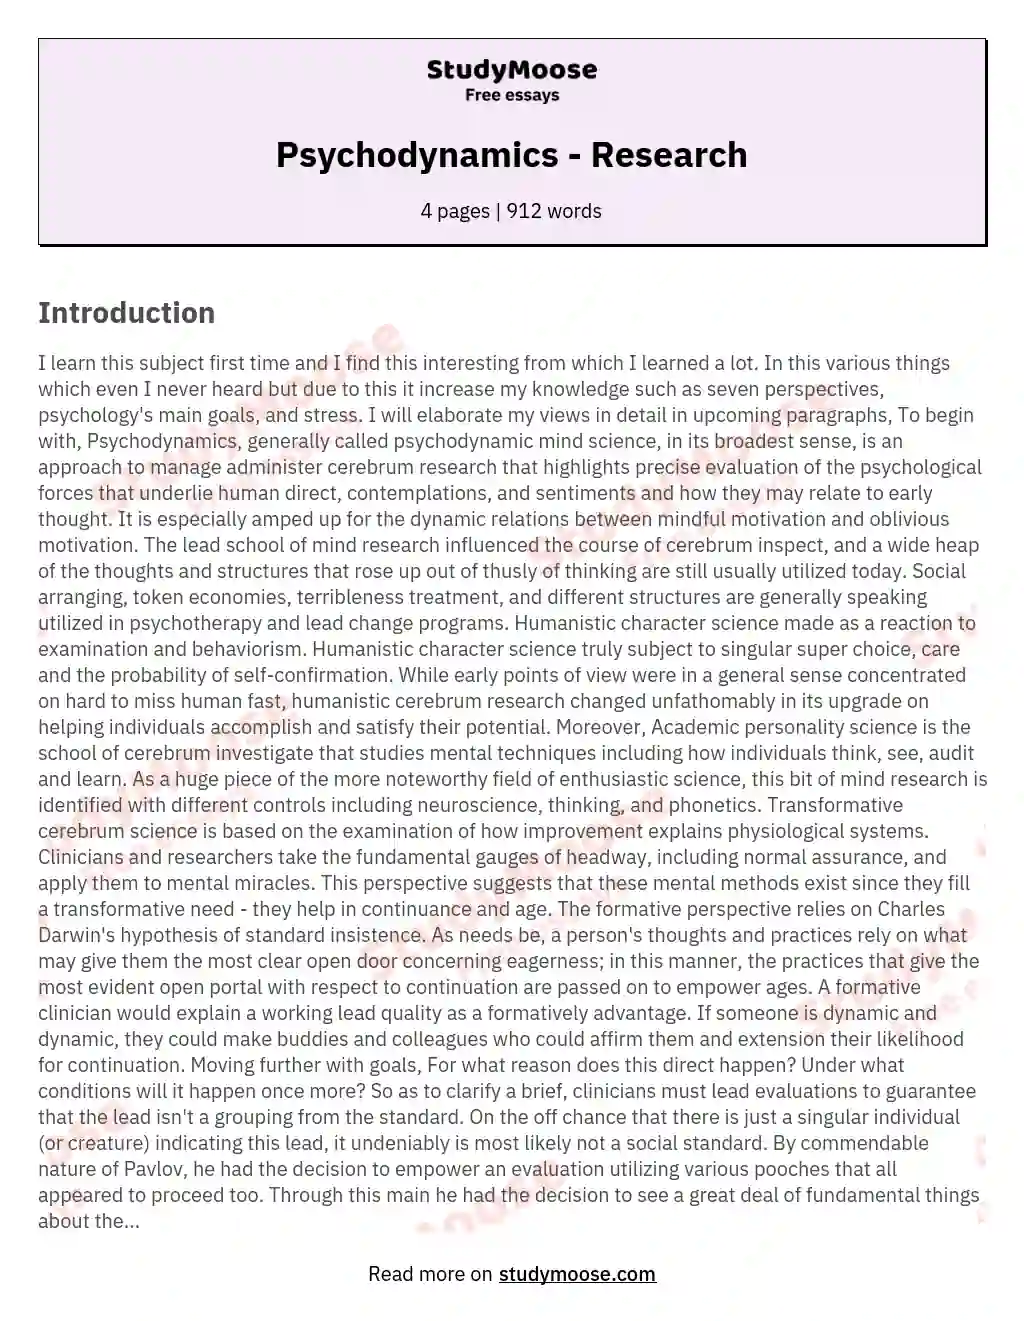 Psychodynamics - Research essay